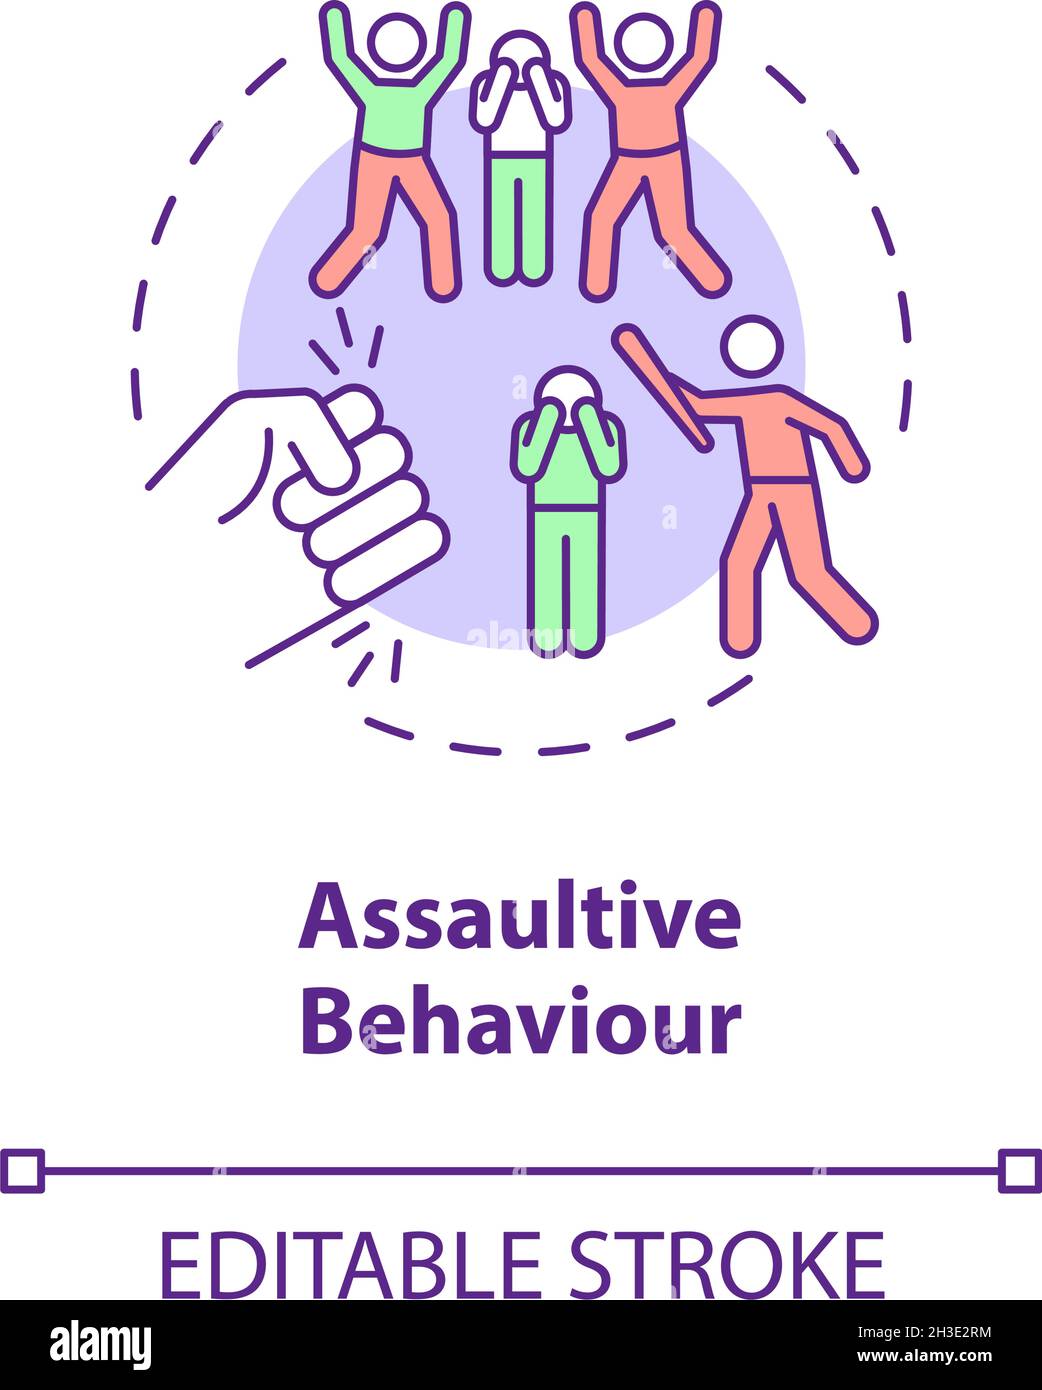 Assaultive behavior concept icon Stock Vector